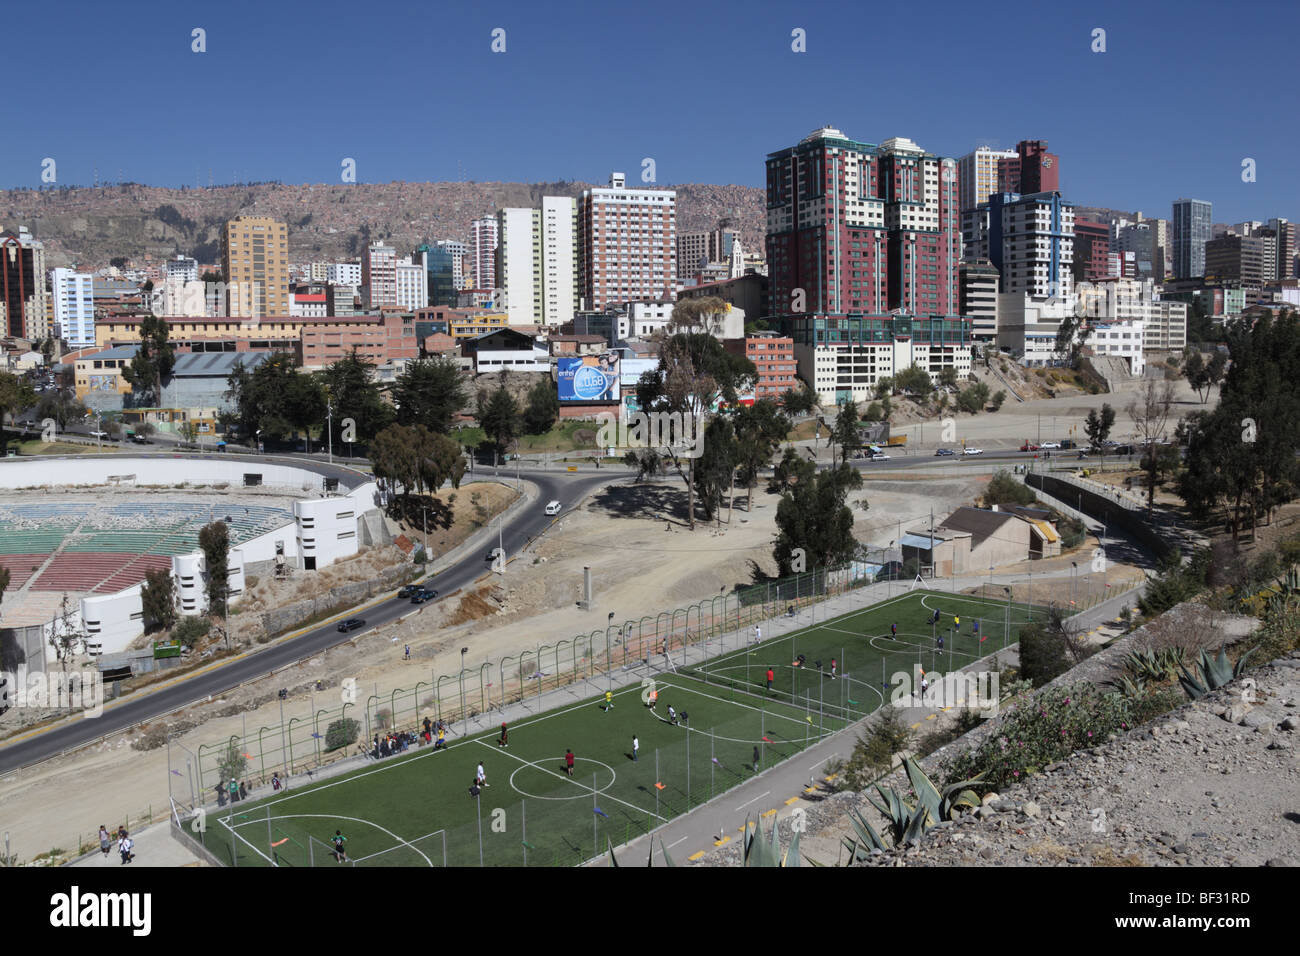 Apartmentblöcke im Stadtzentrum und synthetischer Fußballplatz im Parque Urbano Central neben dem oberen Teil der Avenida del Poeta, La Paz, Bolivien. Stockfoto